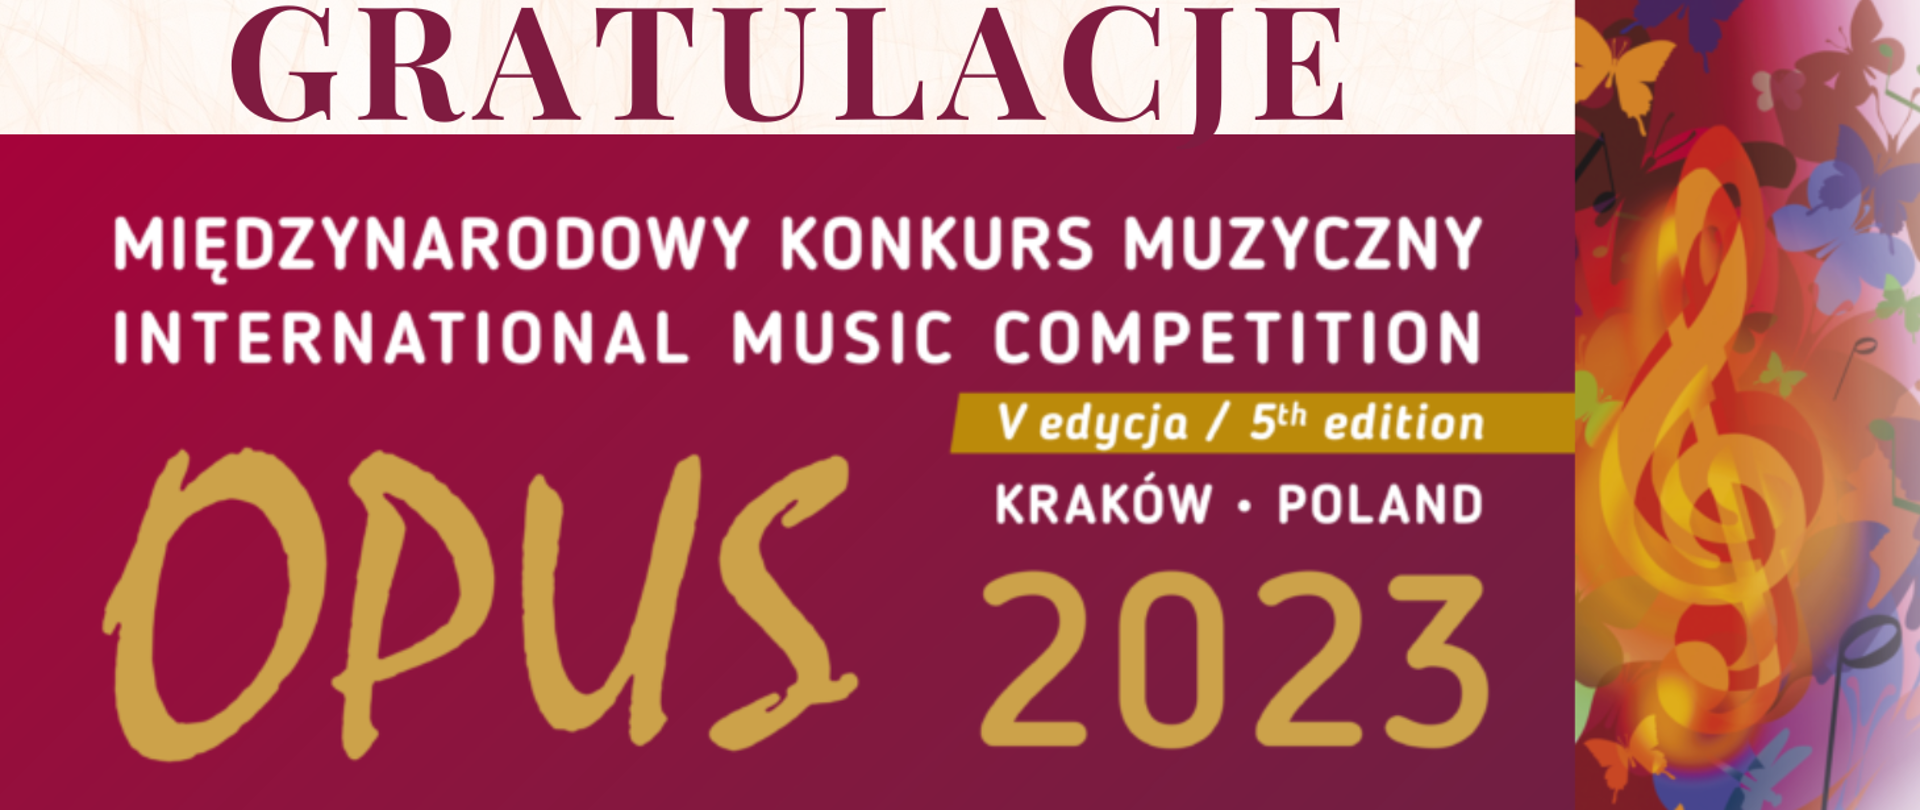 U góry obrazka bordowy napis: "gratulacje". Poniżej na bordowym tle nazwa konkursu: "Międzynarodowy Konkurs Muzyczny Opus 2023". Po prawej stronie pomarańczowy klucz wiolinowy, a wokół niego kolorowe motylki.